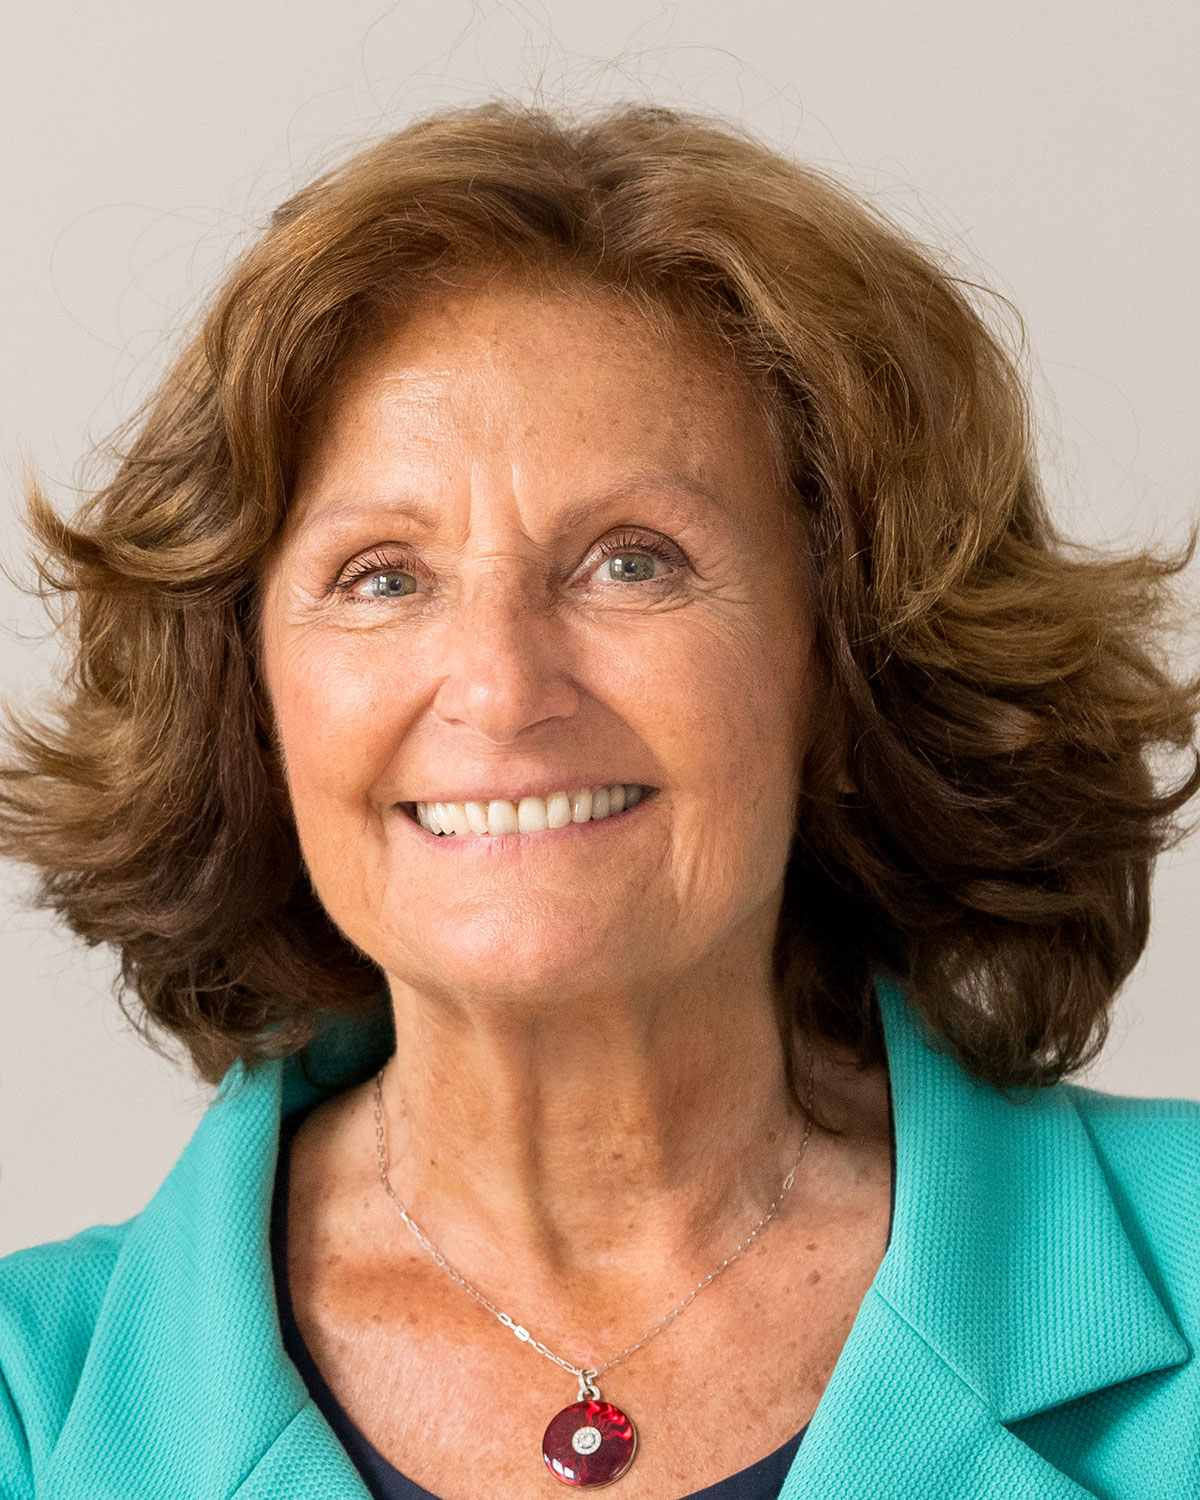 Vice President Prof. Dr. Angelika Görg